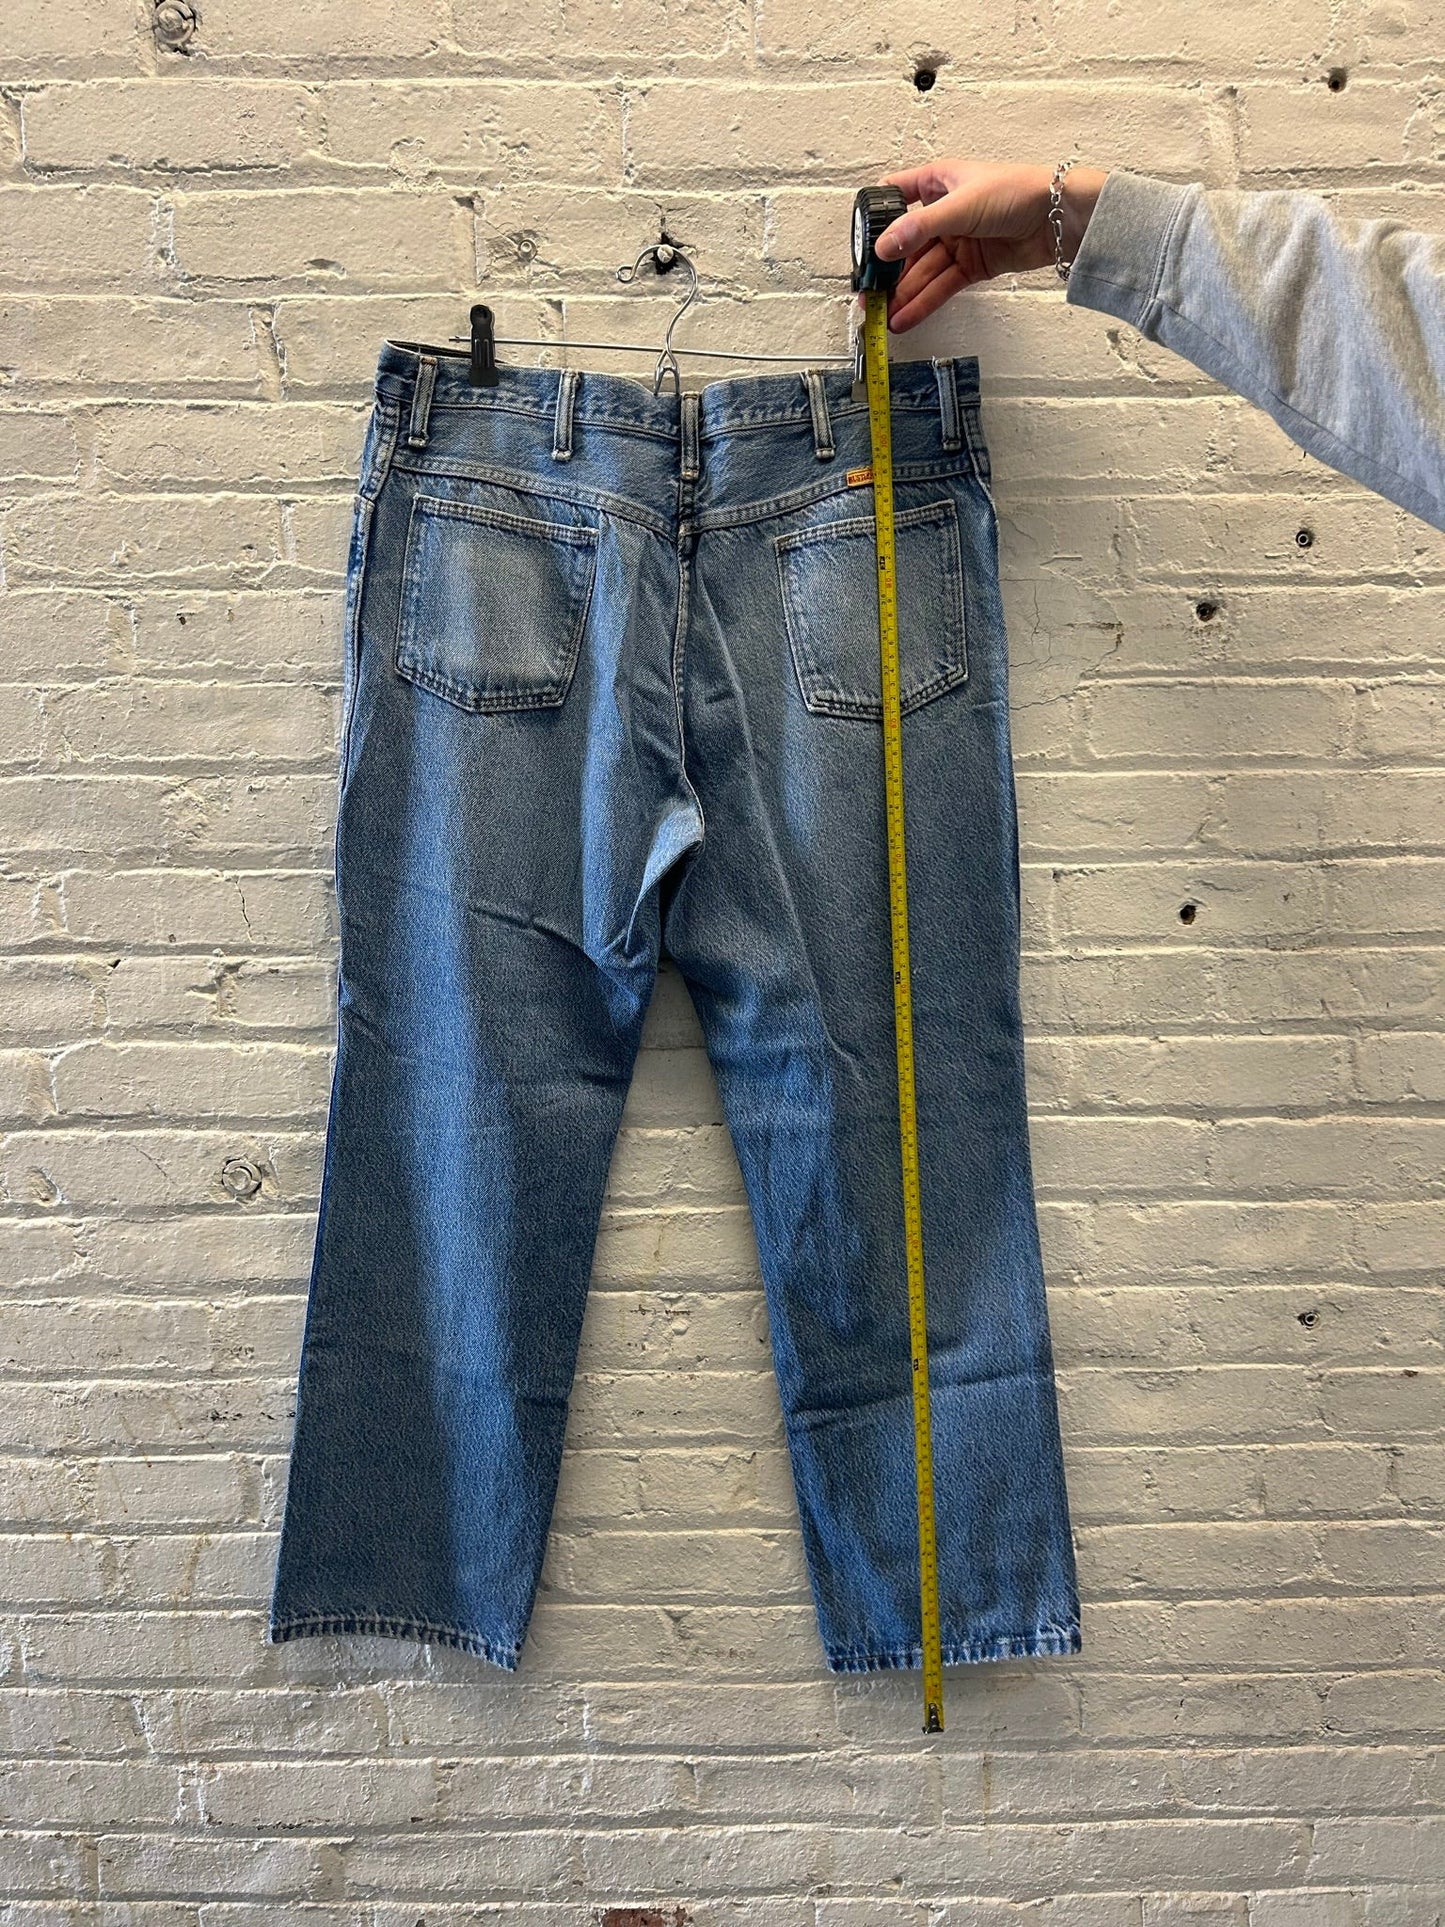 Rustler Denim Jeans Size 38x32